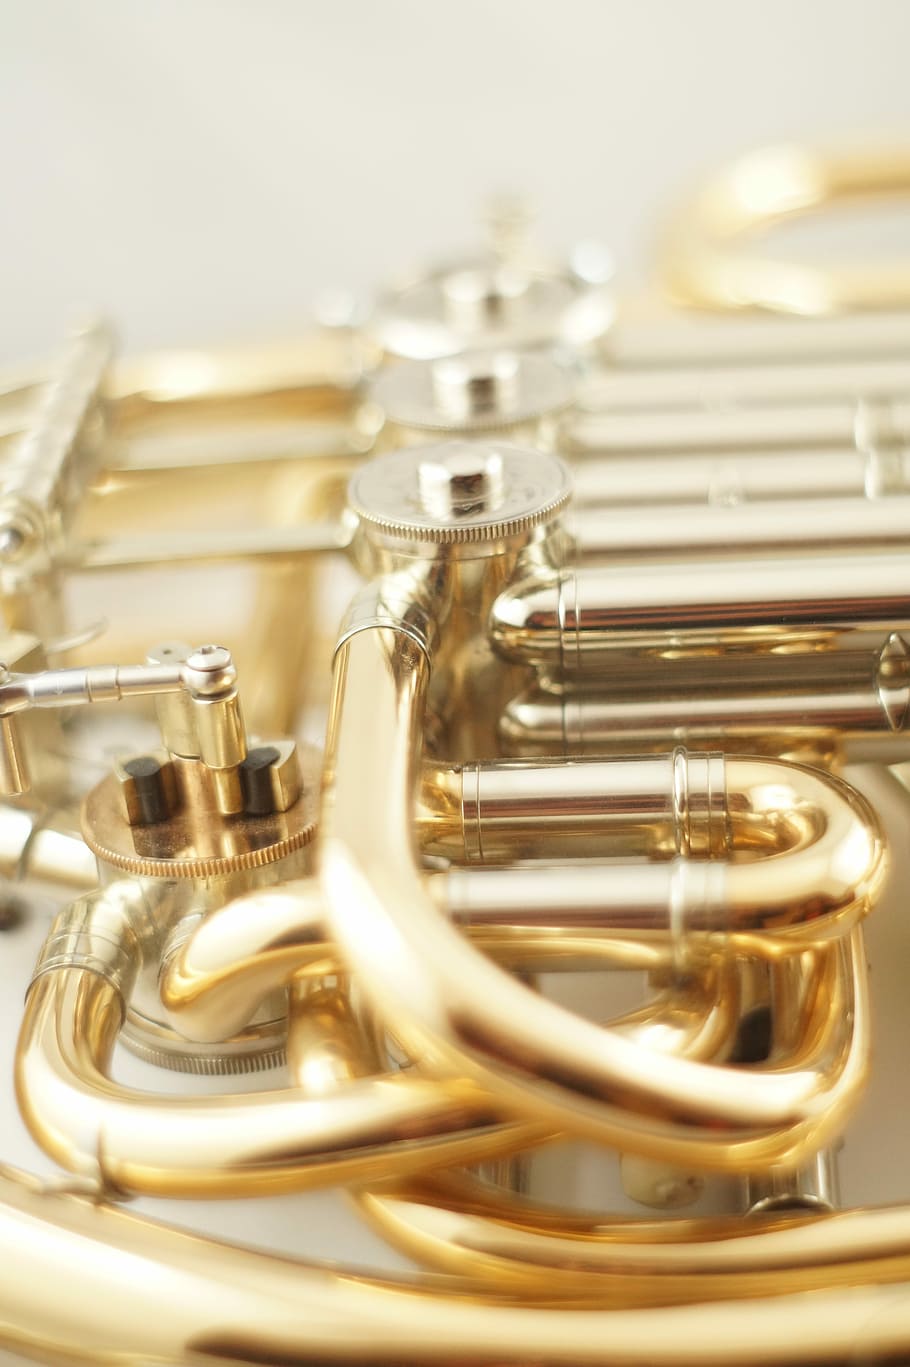 Horn, Musical Instrument, brass instrument, wind instrument, trumpet